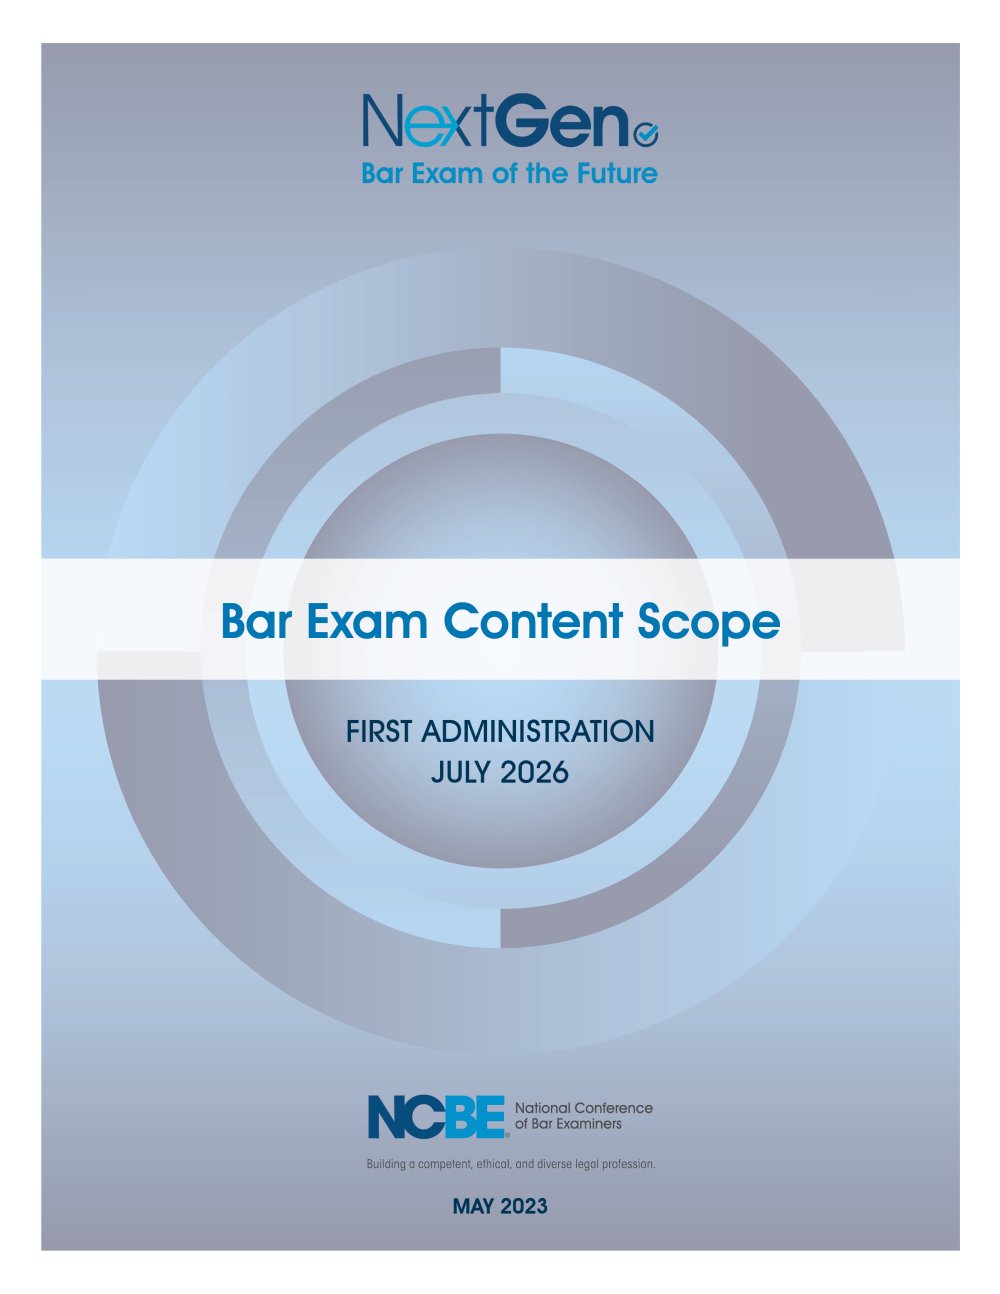 Cover of future bar exam content scope document